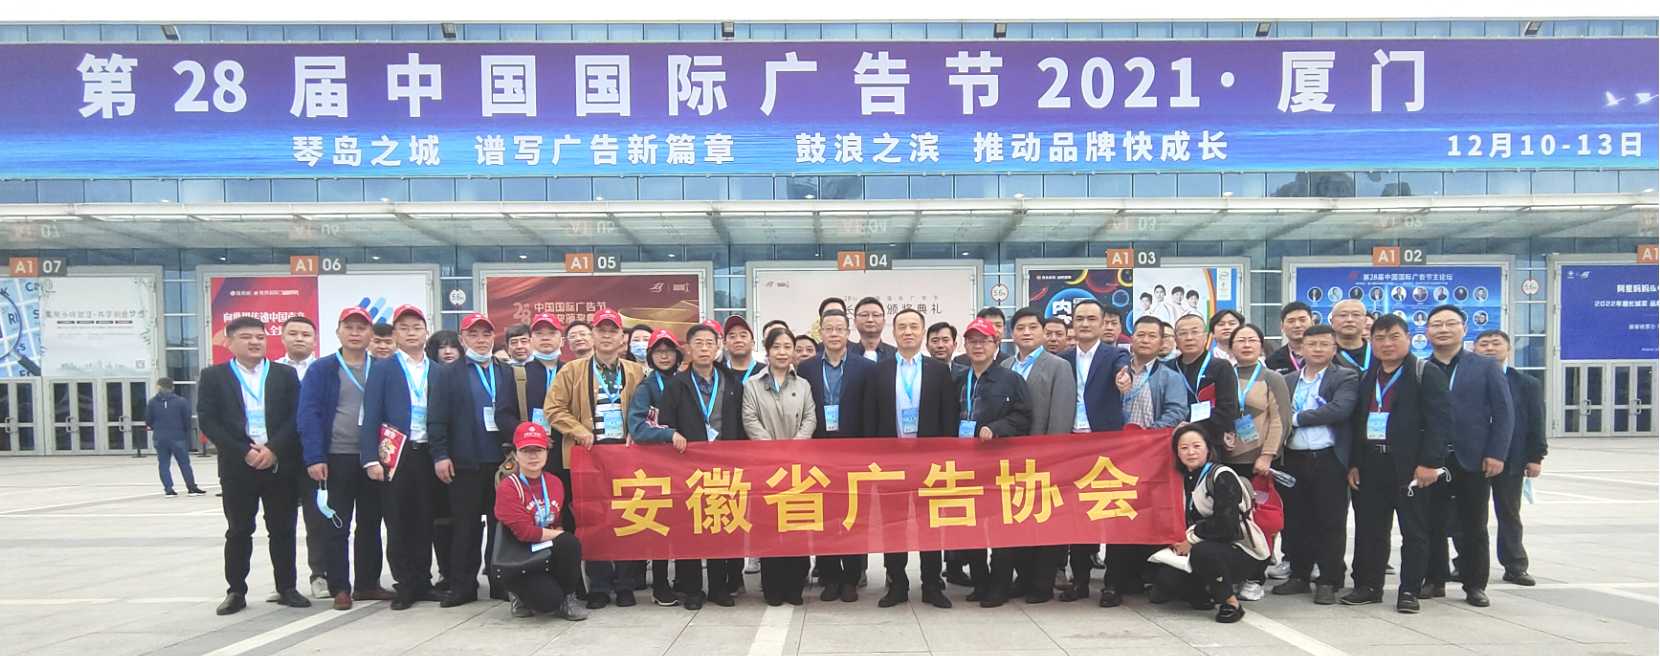 安徽广告协会在第28届中国国际广告节载誉而归